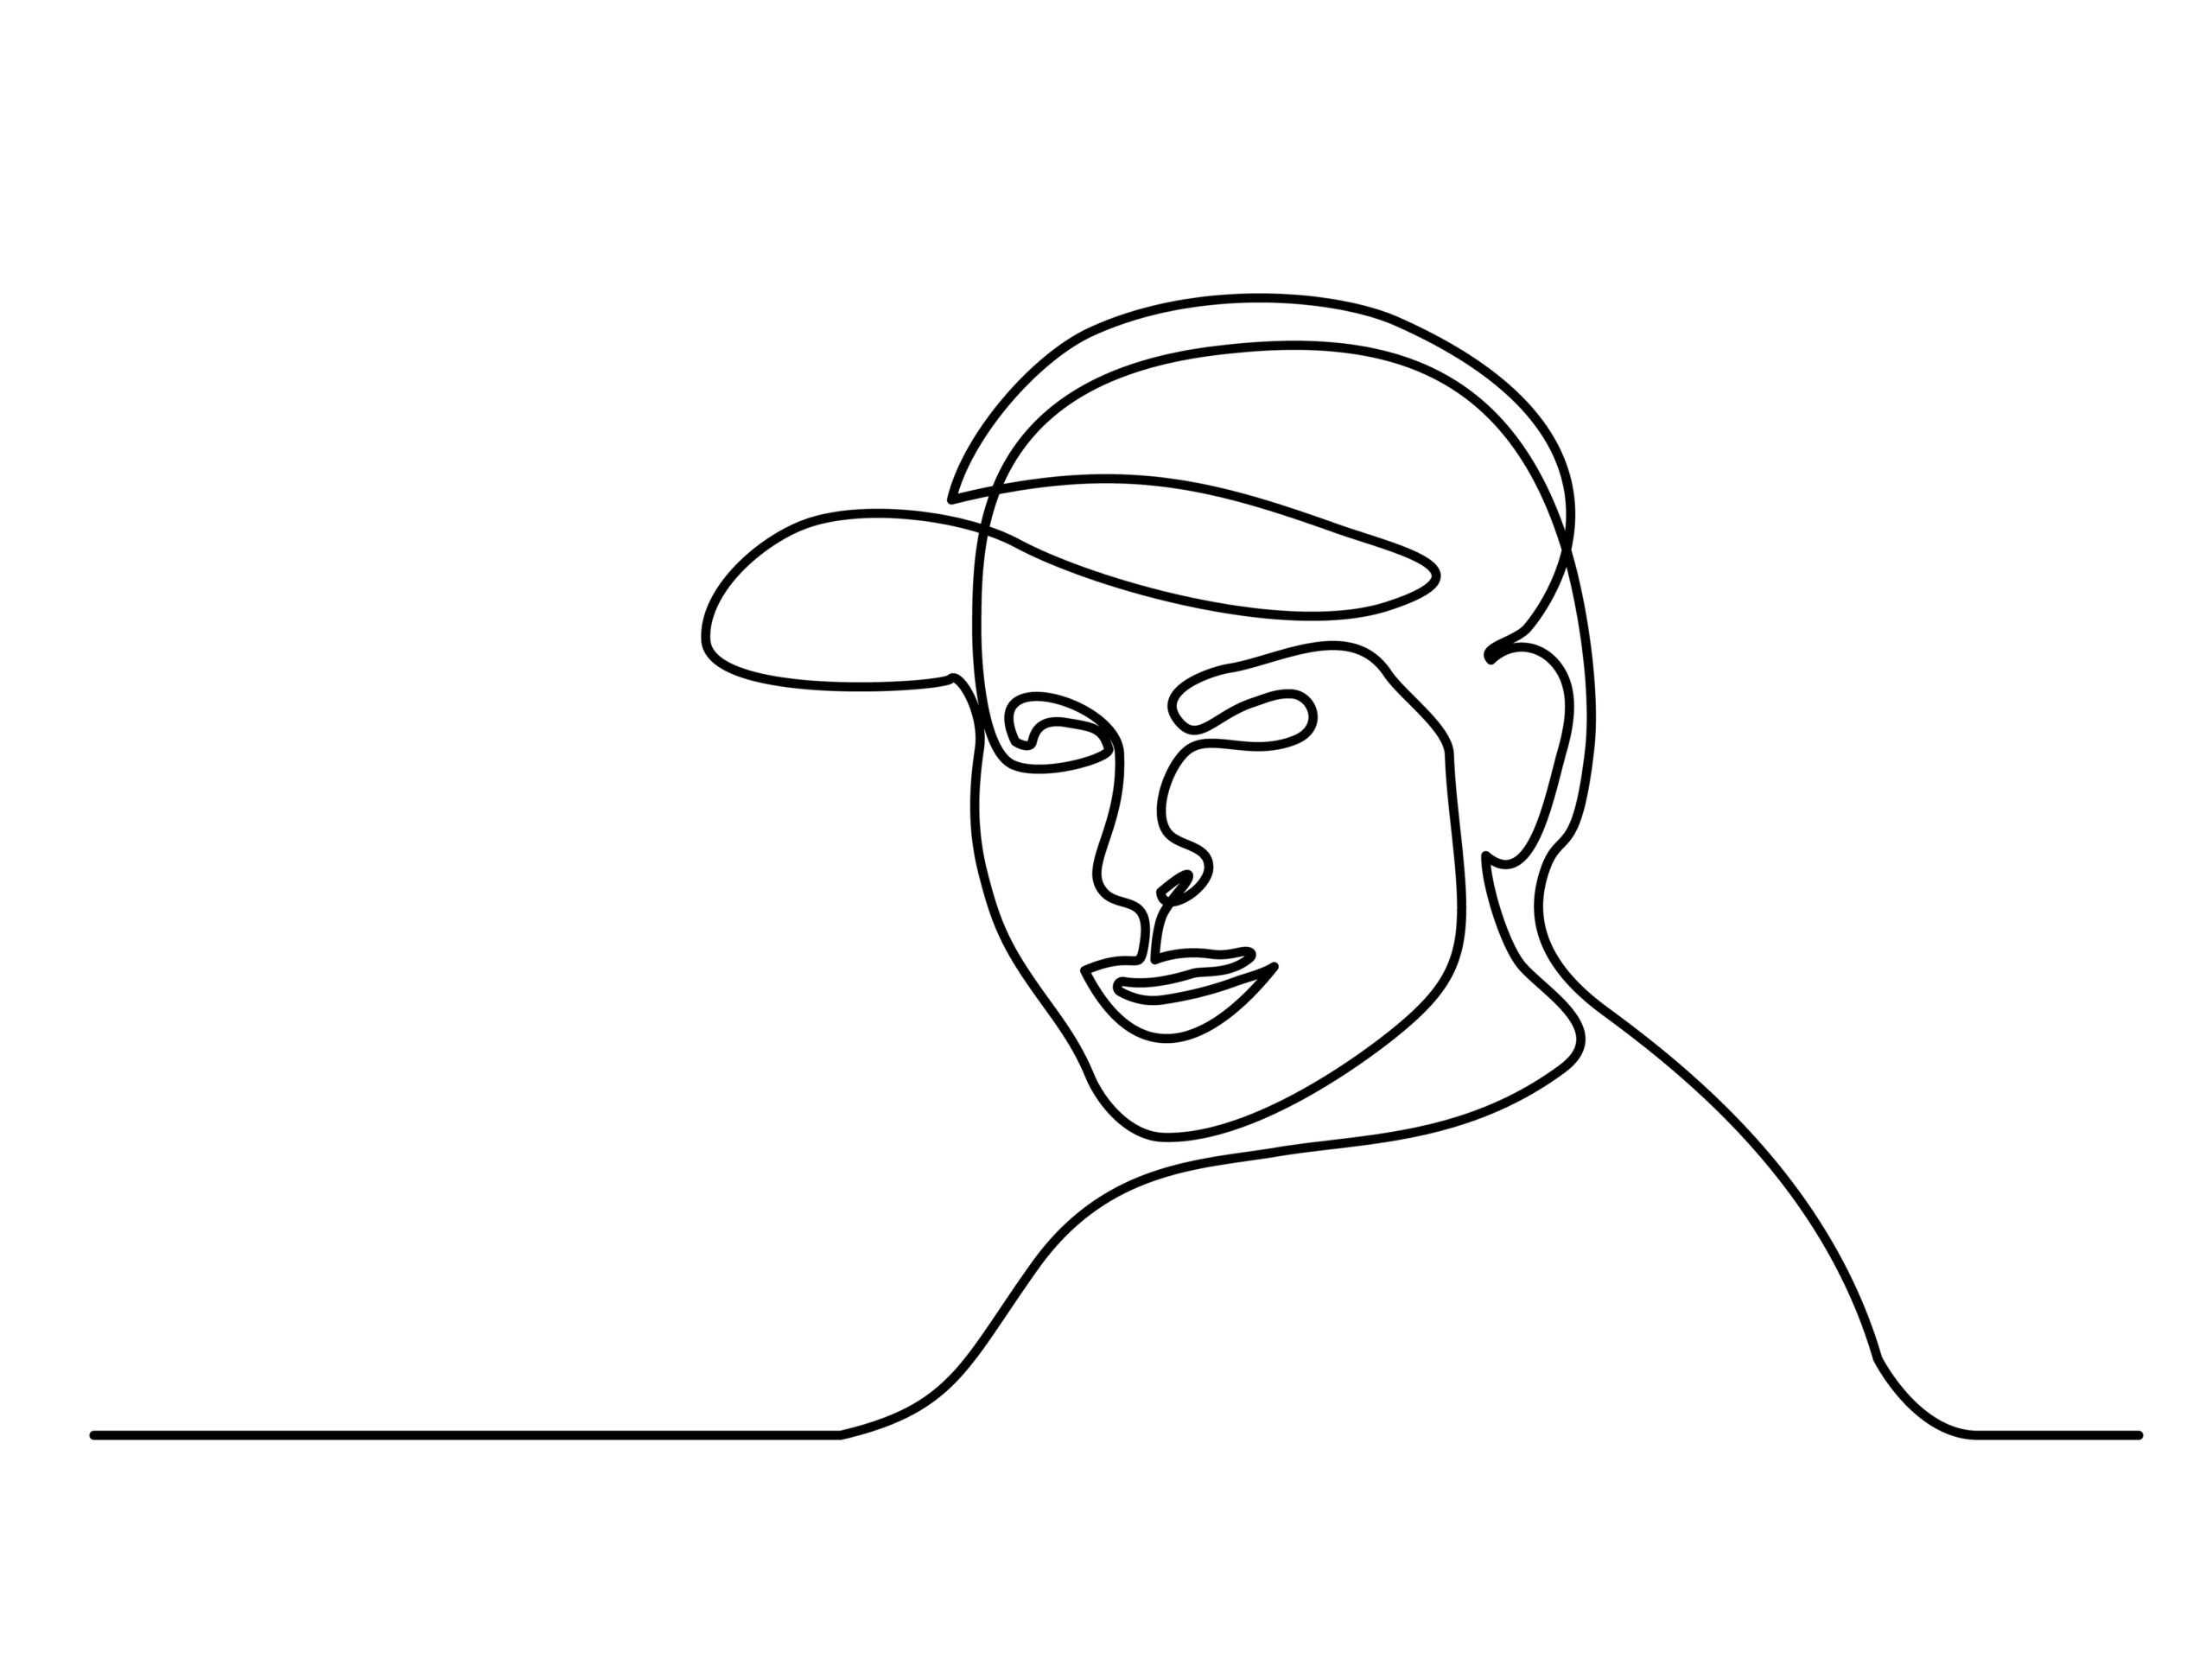 tekening van een man gemaakt met één lijn